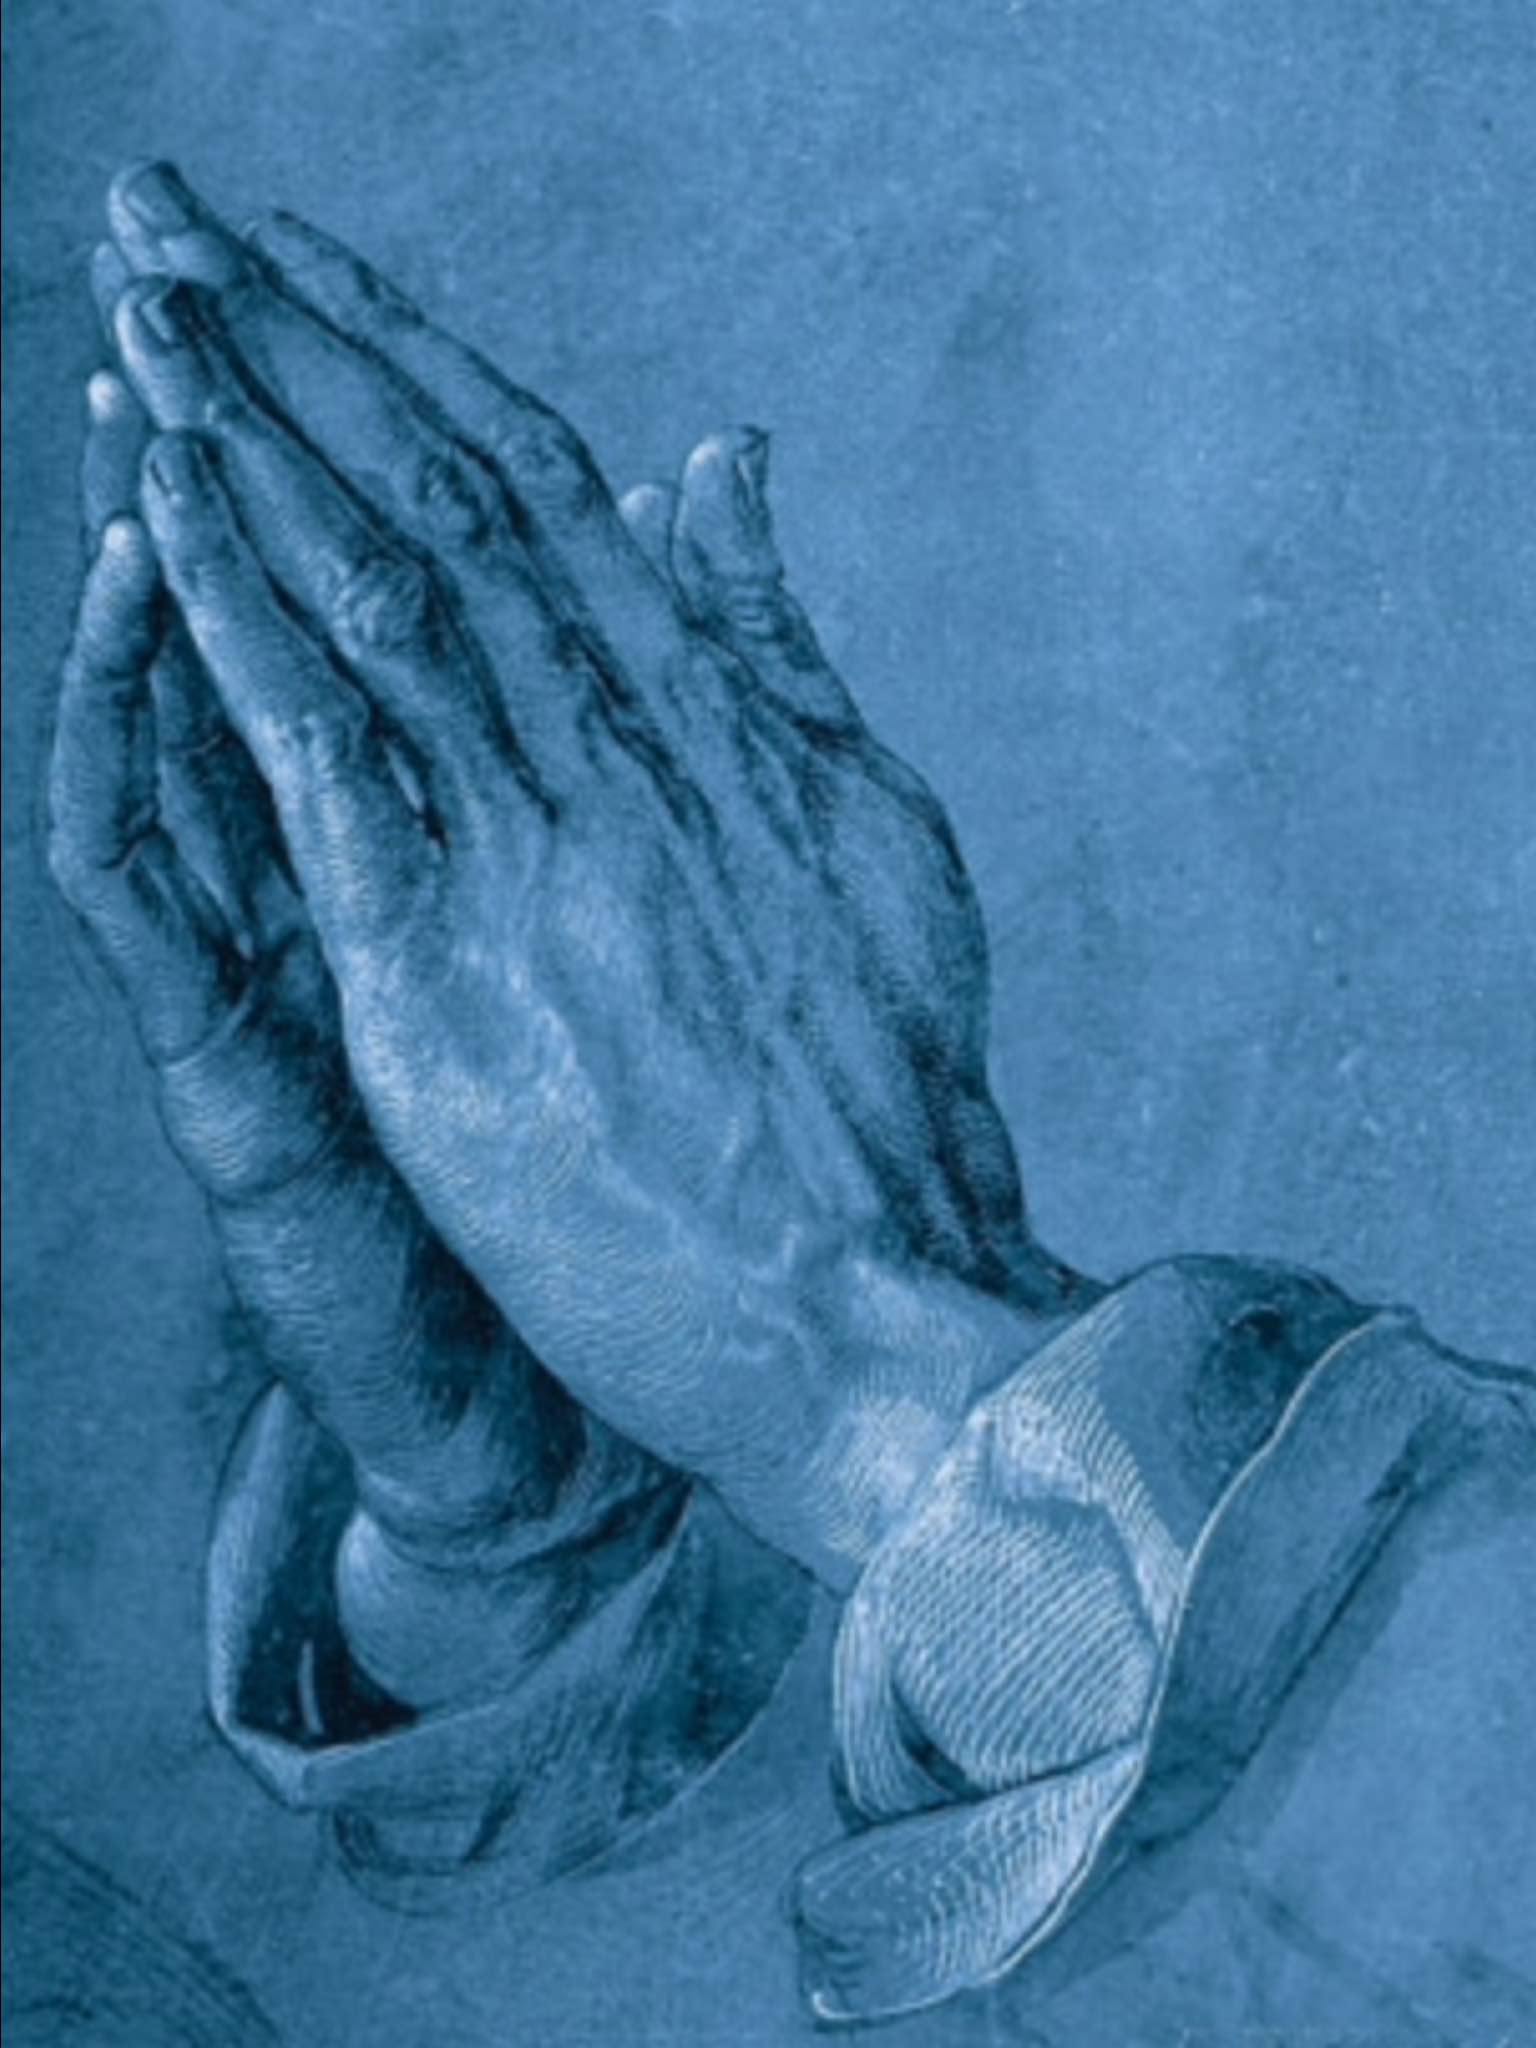 Praying Hands Image